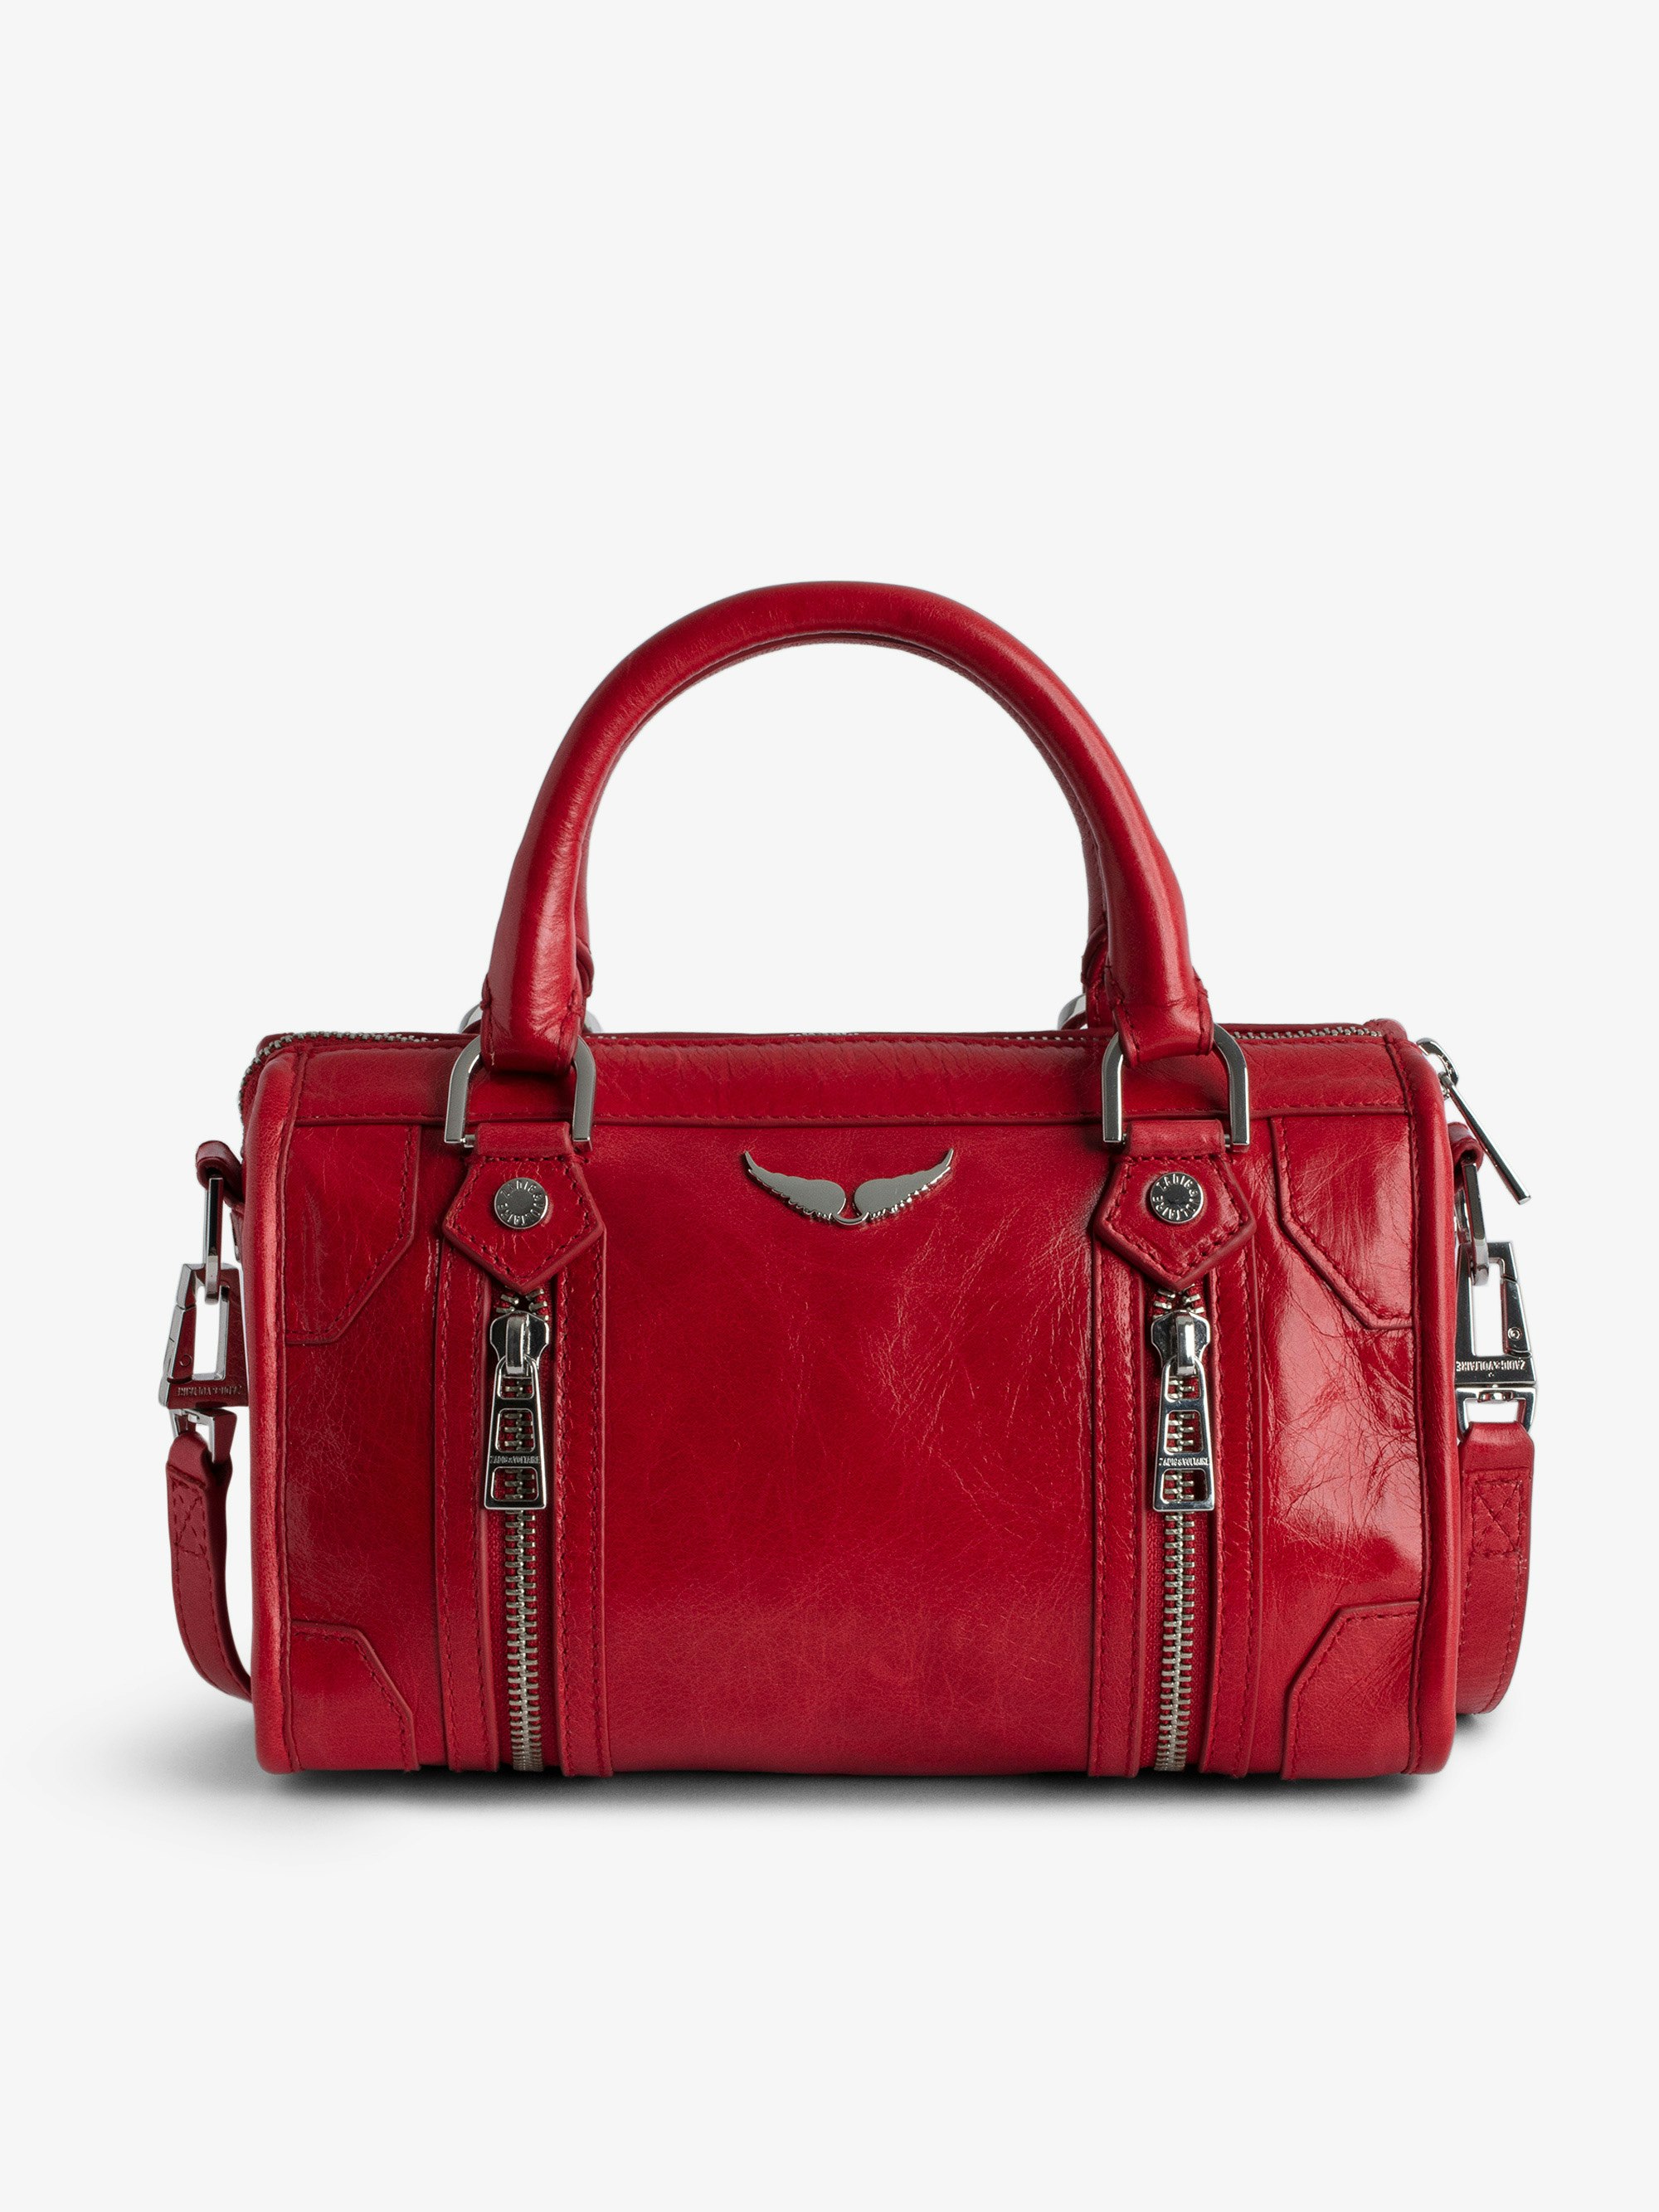 Tasche XS Sunny #2 - Kleine Handtasche aus rotem Lackleder in Vintage-Optik mit kurzen Henkeln und Schulterriemen.